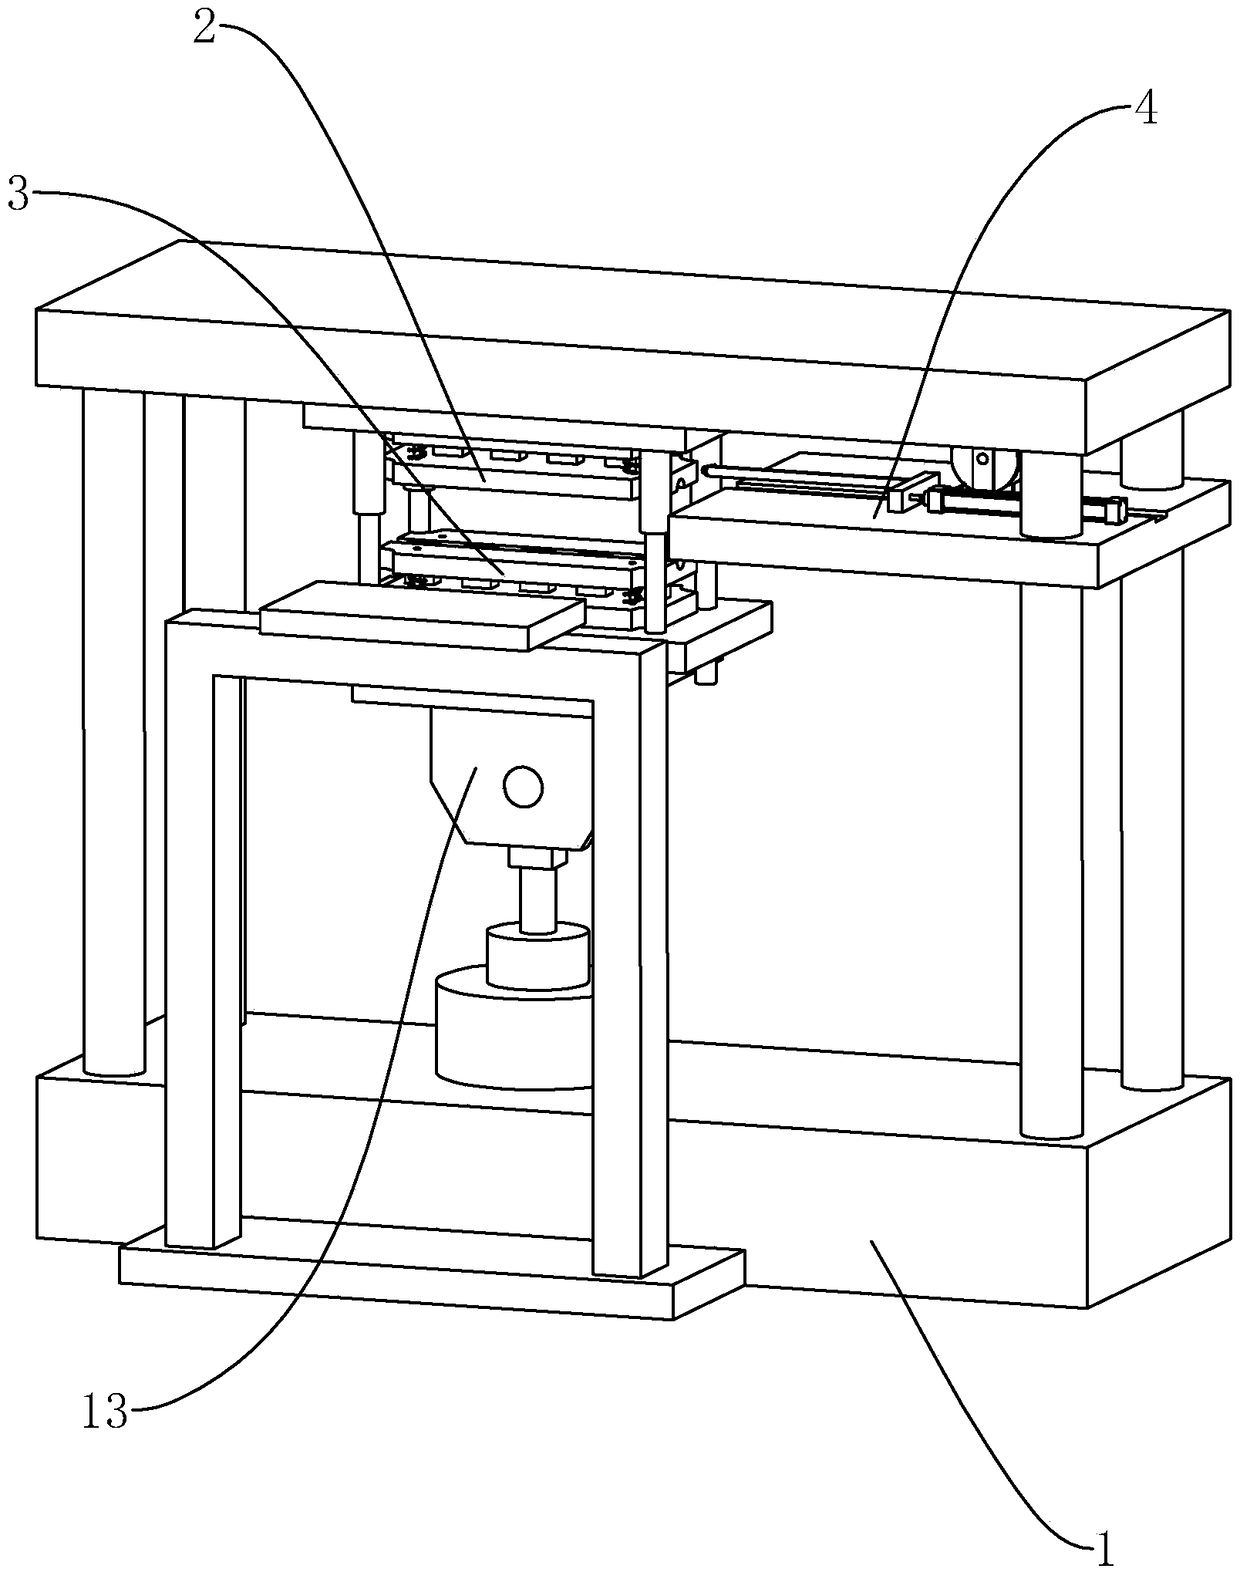 Copper strip sewing machine